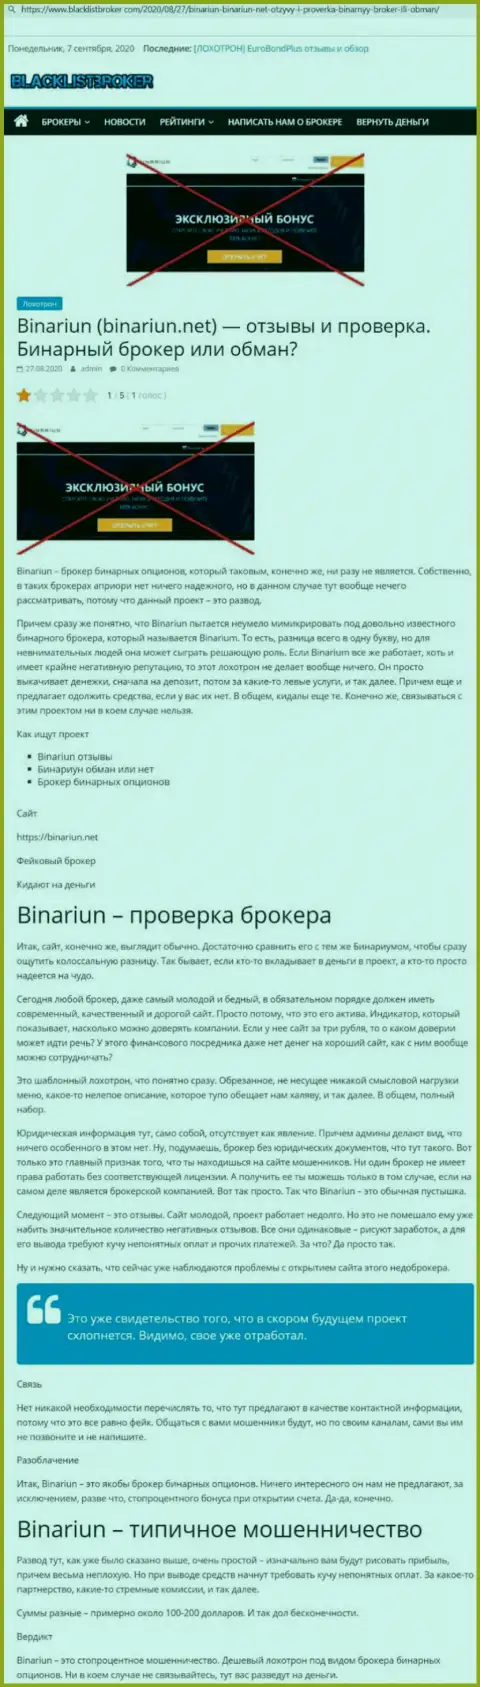 Binariun Net - это МОШЕННИКИ !!! Схемы противоправных действий и отзывы пострадавших